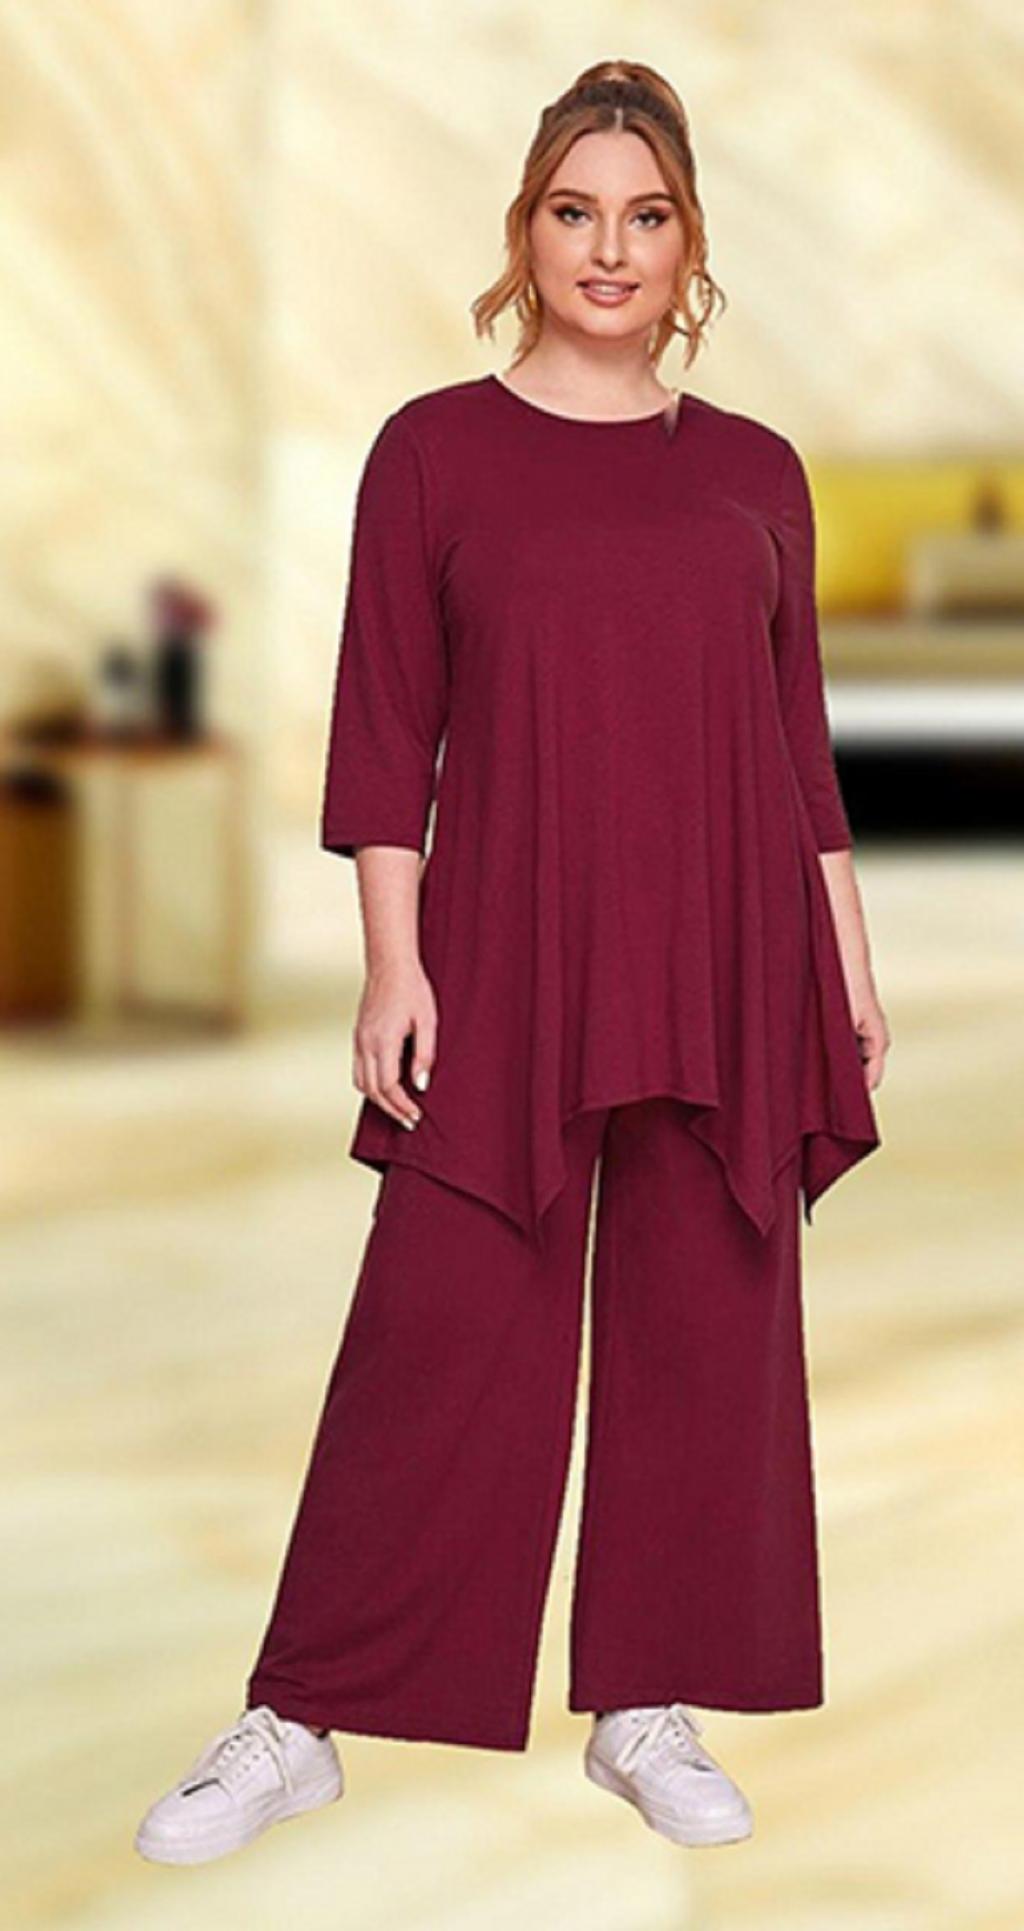 لباس خانگی برای عید اینستاگرام 1